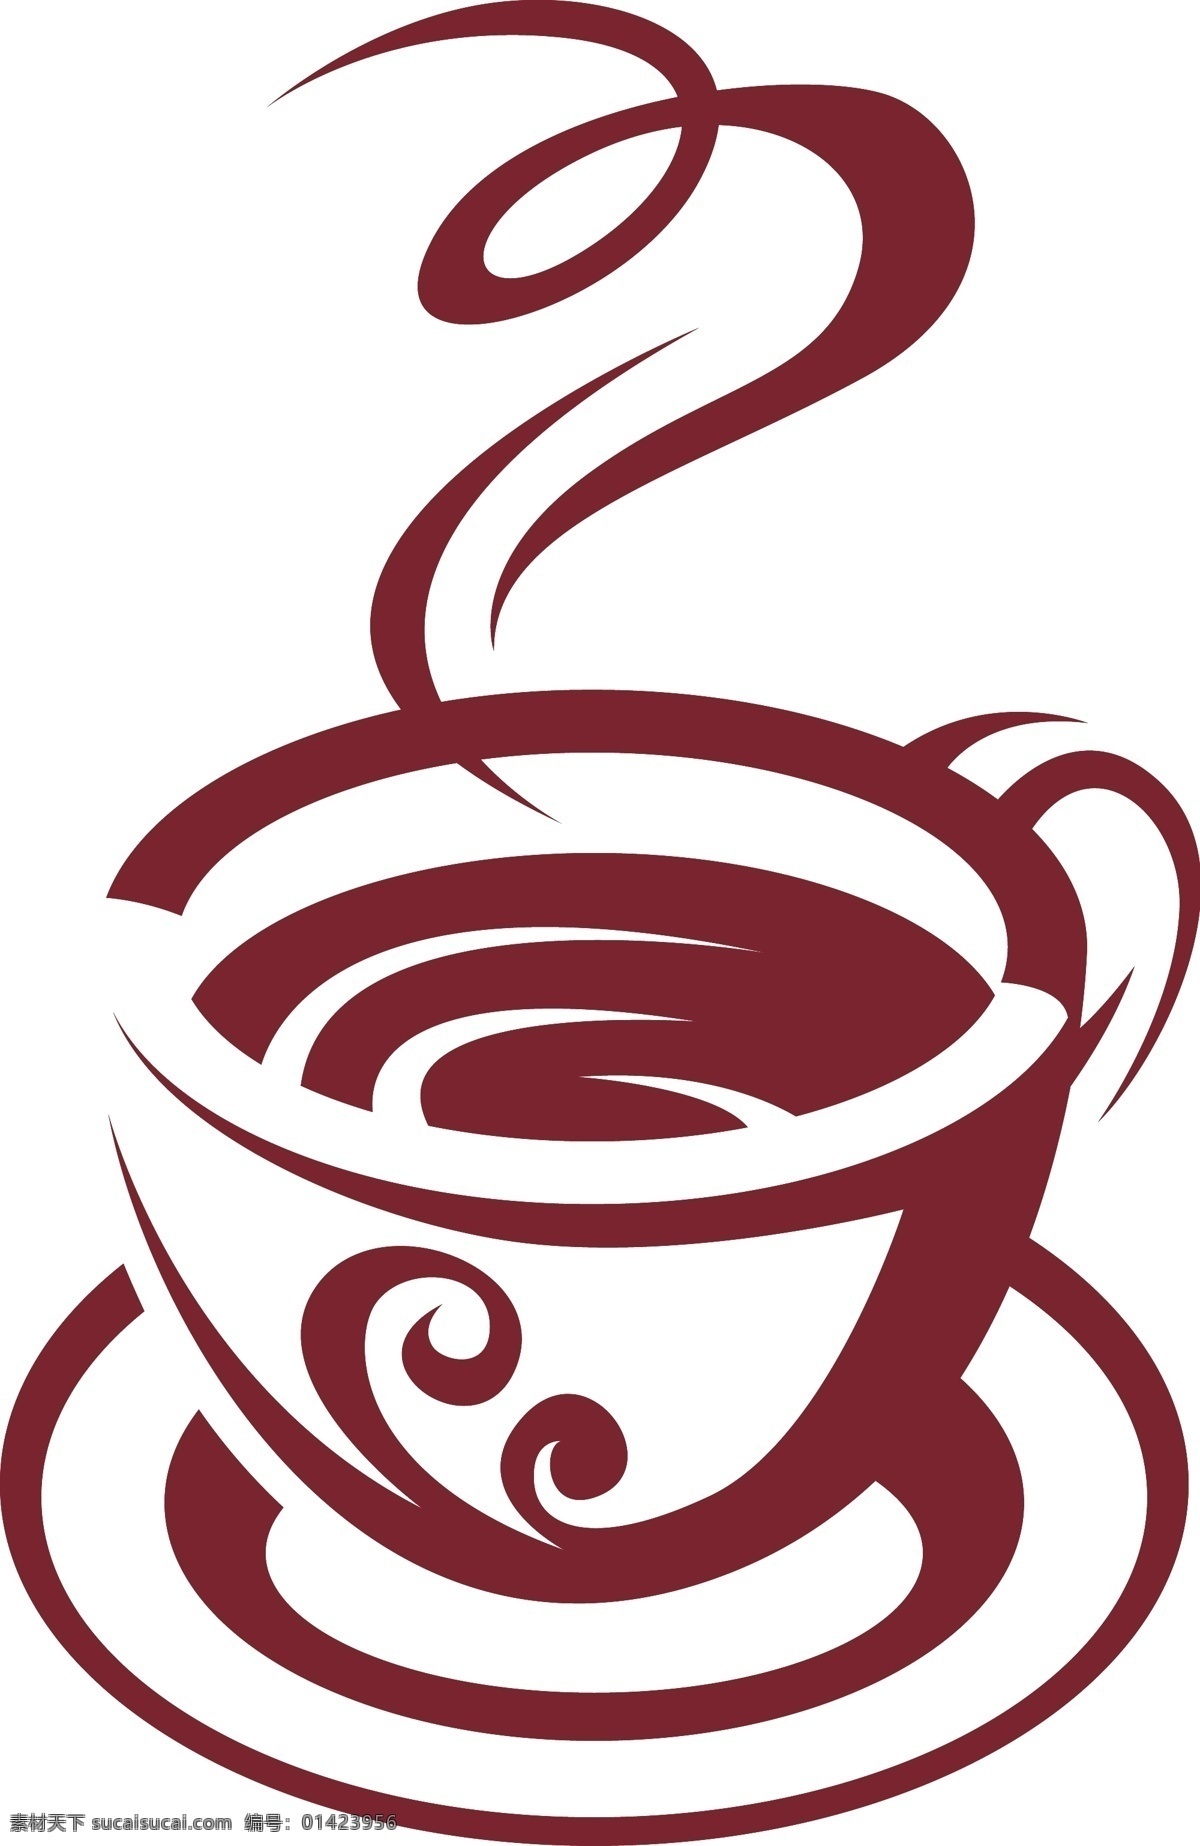 简洁 咖啡 图形 矢量 banner logo 杯子 咖啡杯 矢量素材 蒸汽 矢量图 其他矢量图